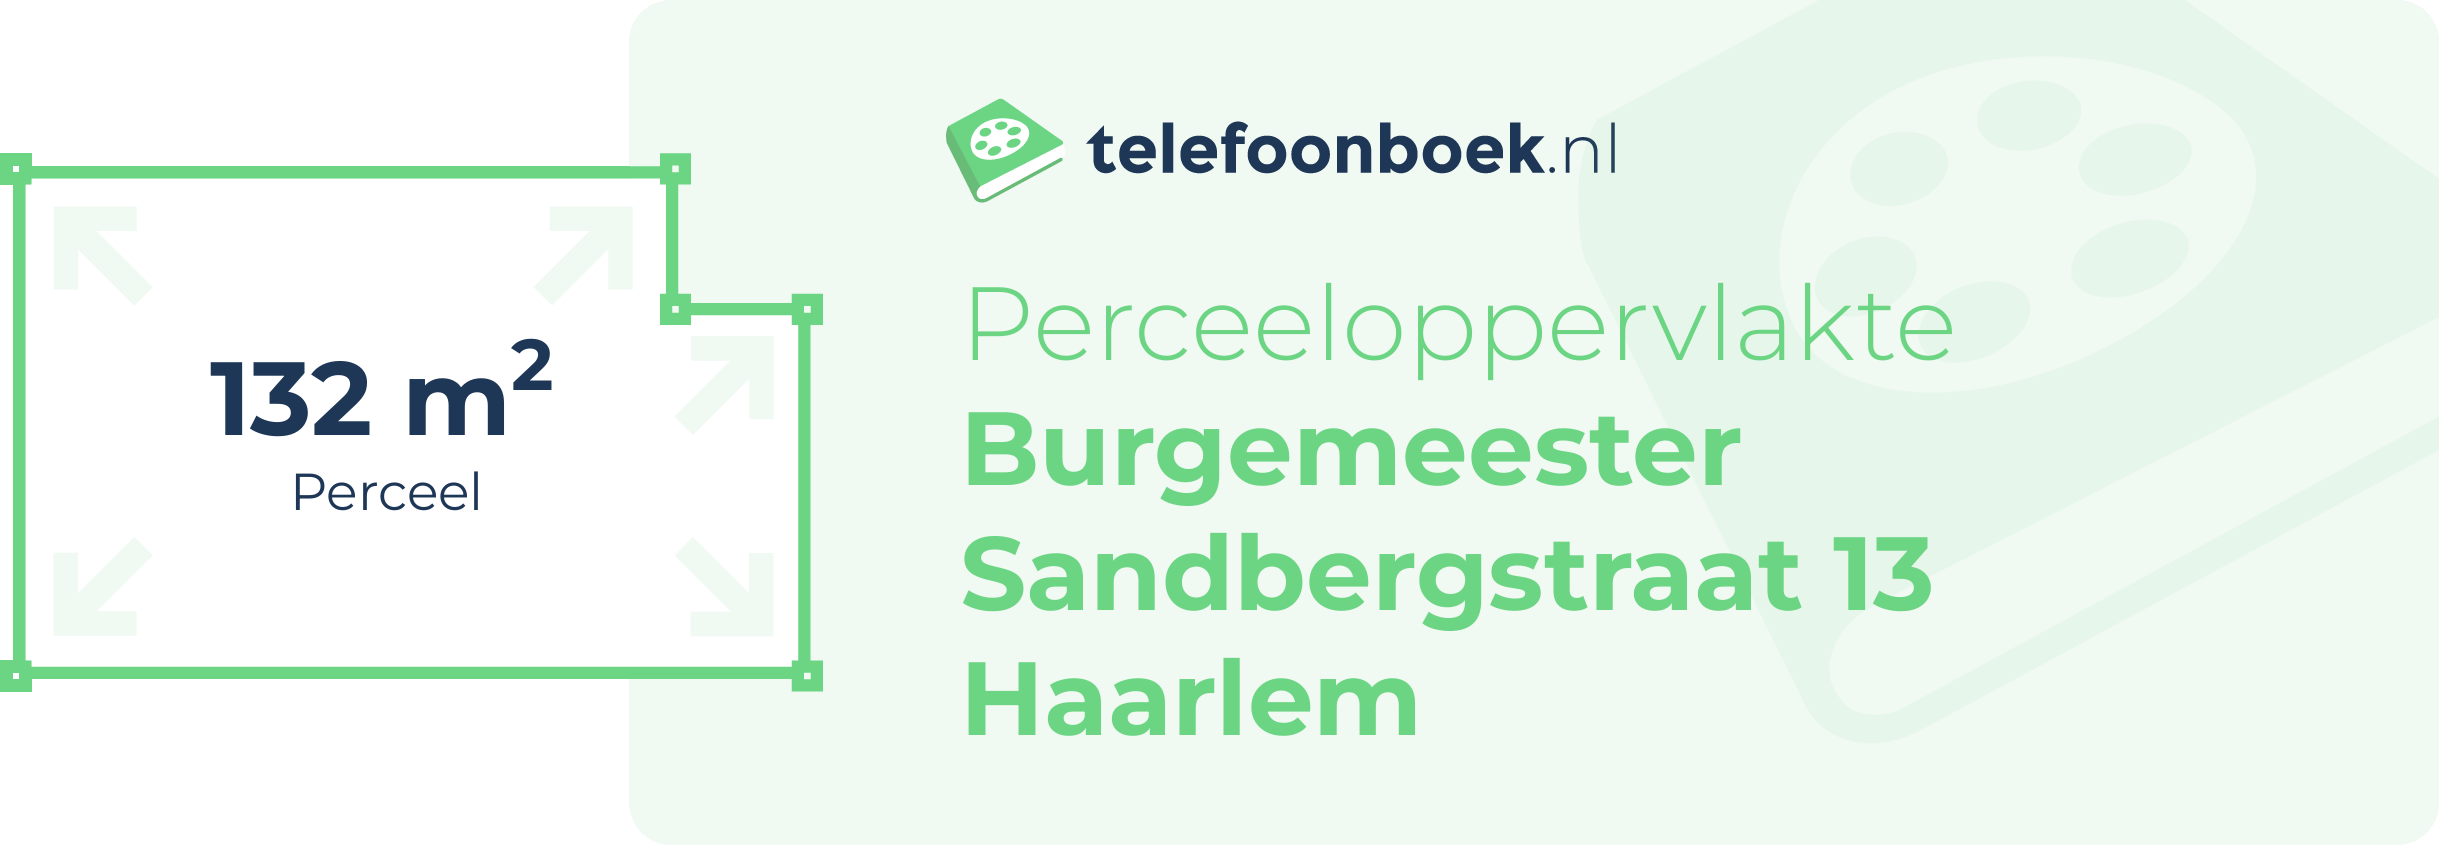 Perceeloppervlakte Burgemeester Sandbergstraat 13 Haarlem